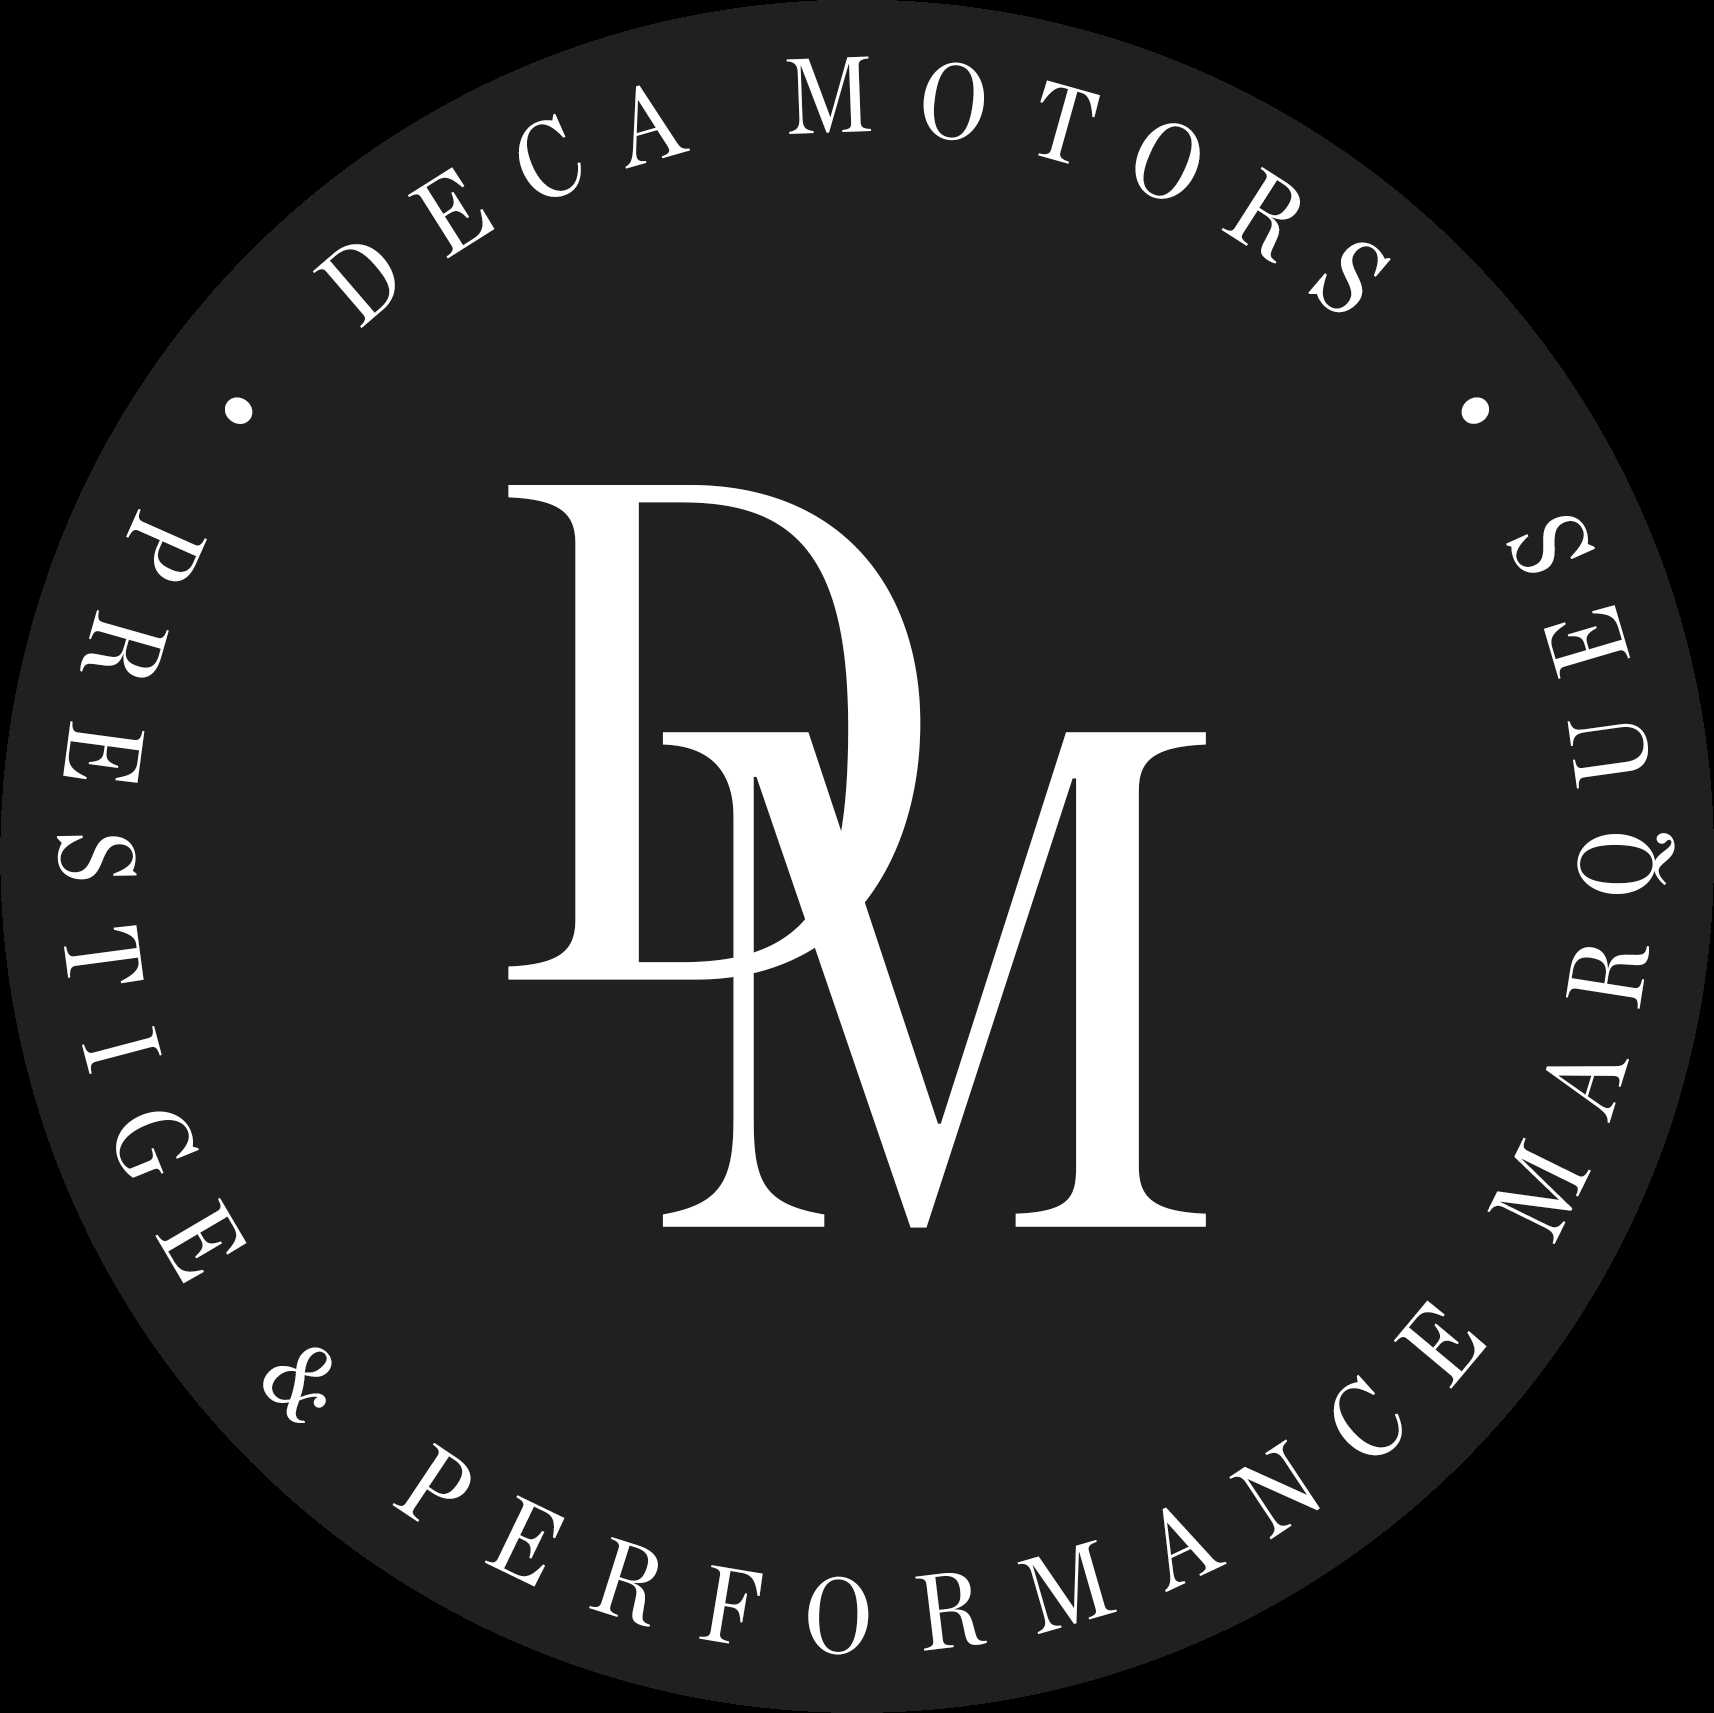 Deca Motors Limited